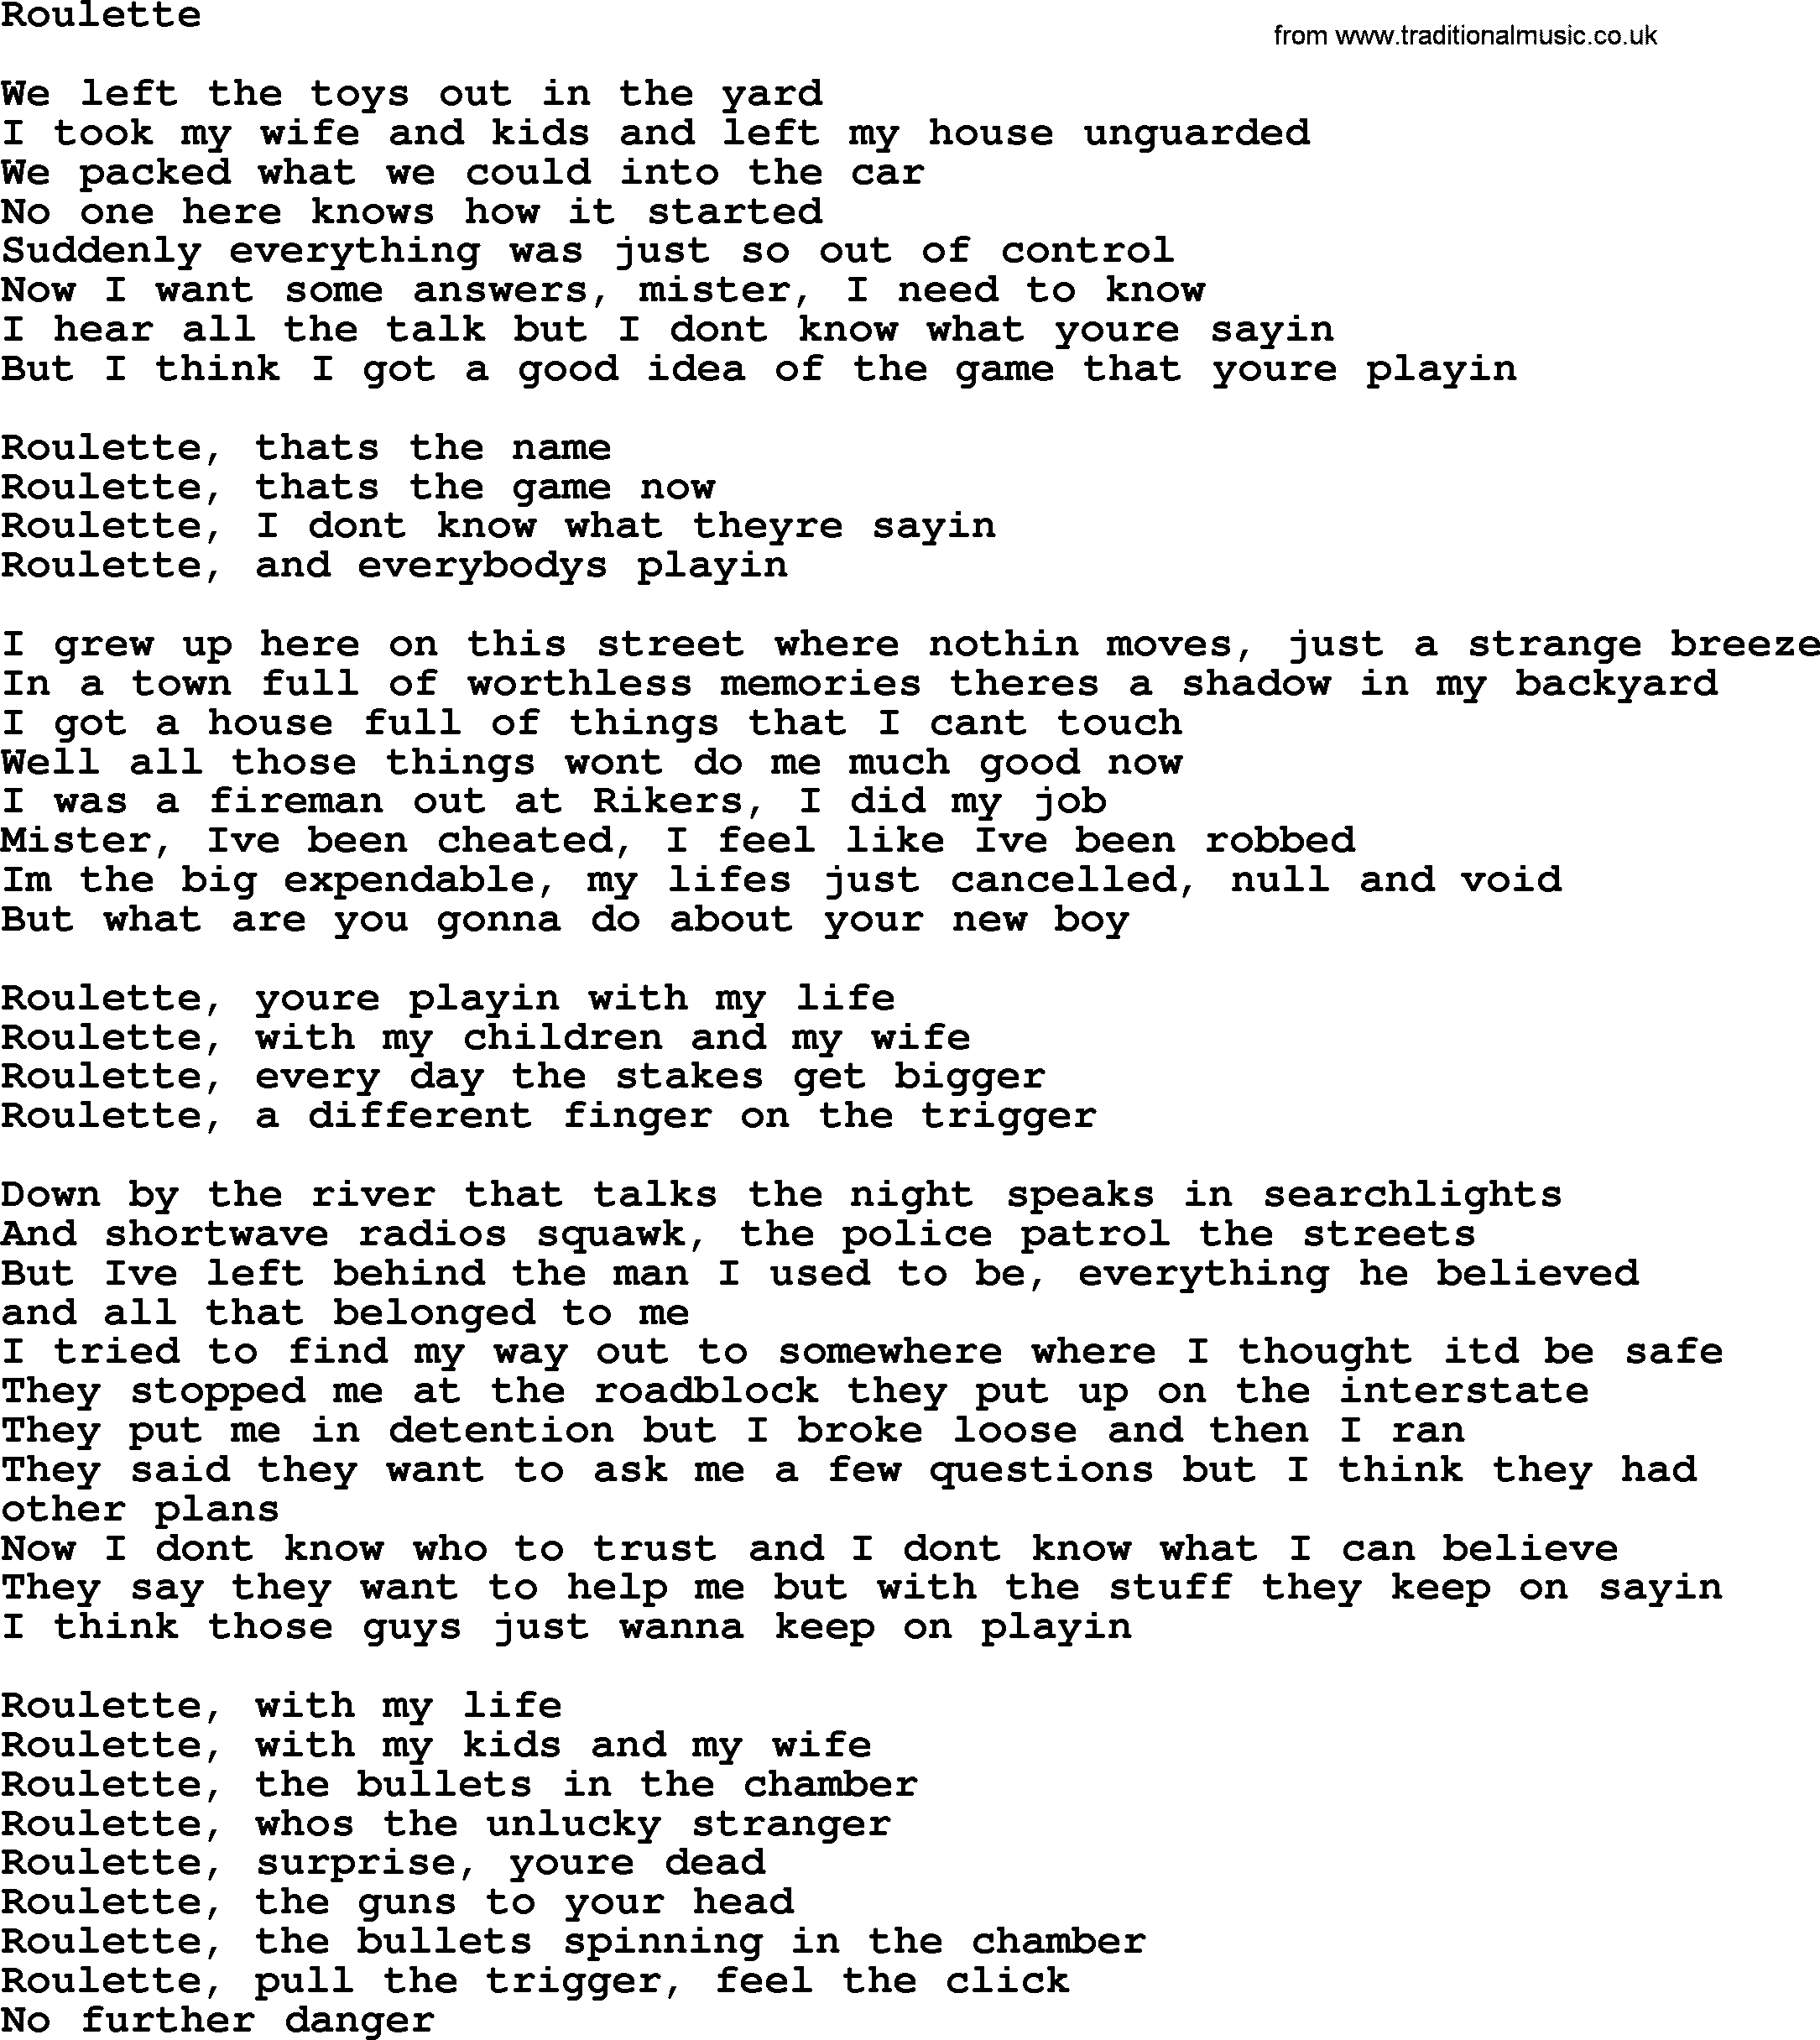 Bruce Springsteen song: Roulette lyrics